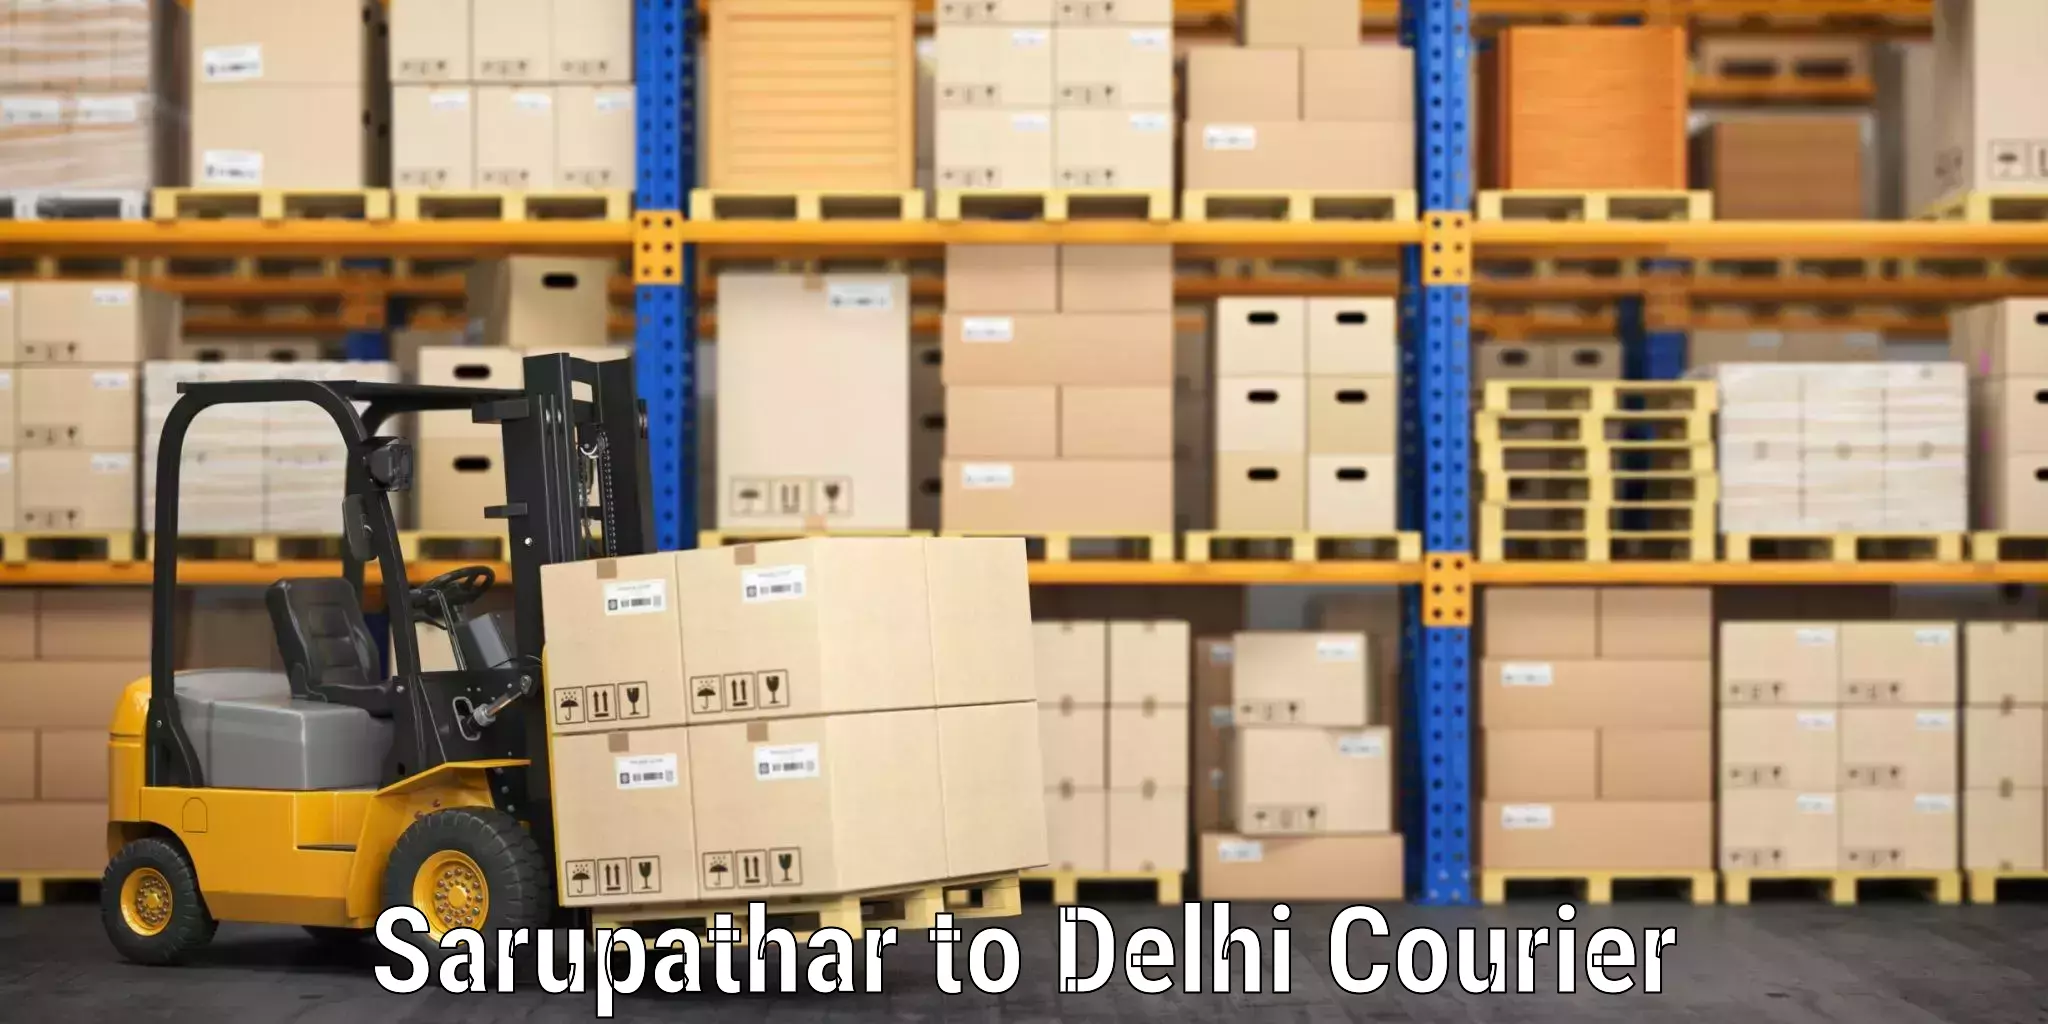 Baggage shipping service Sarupathar to Delhi